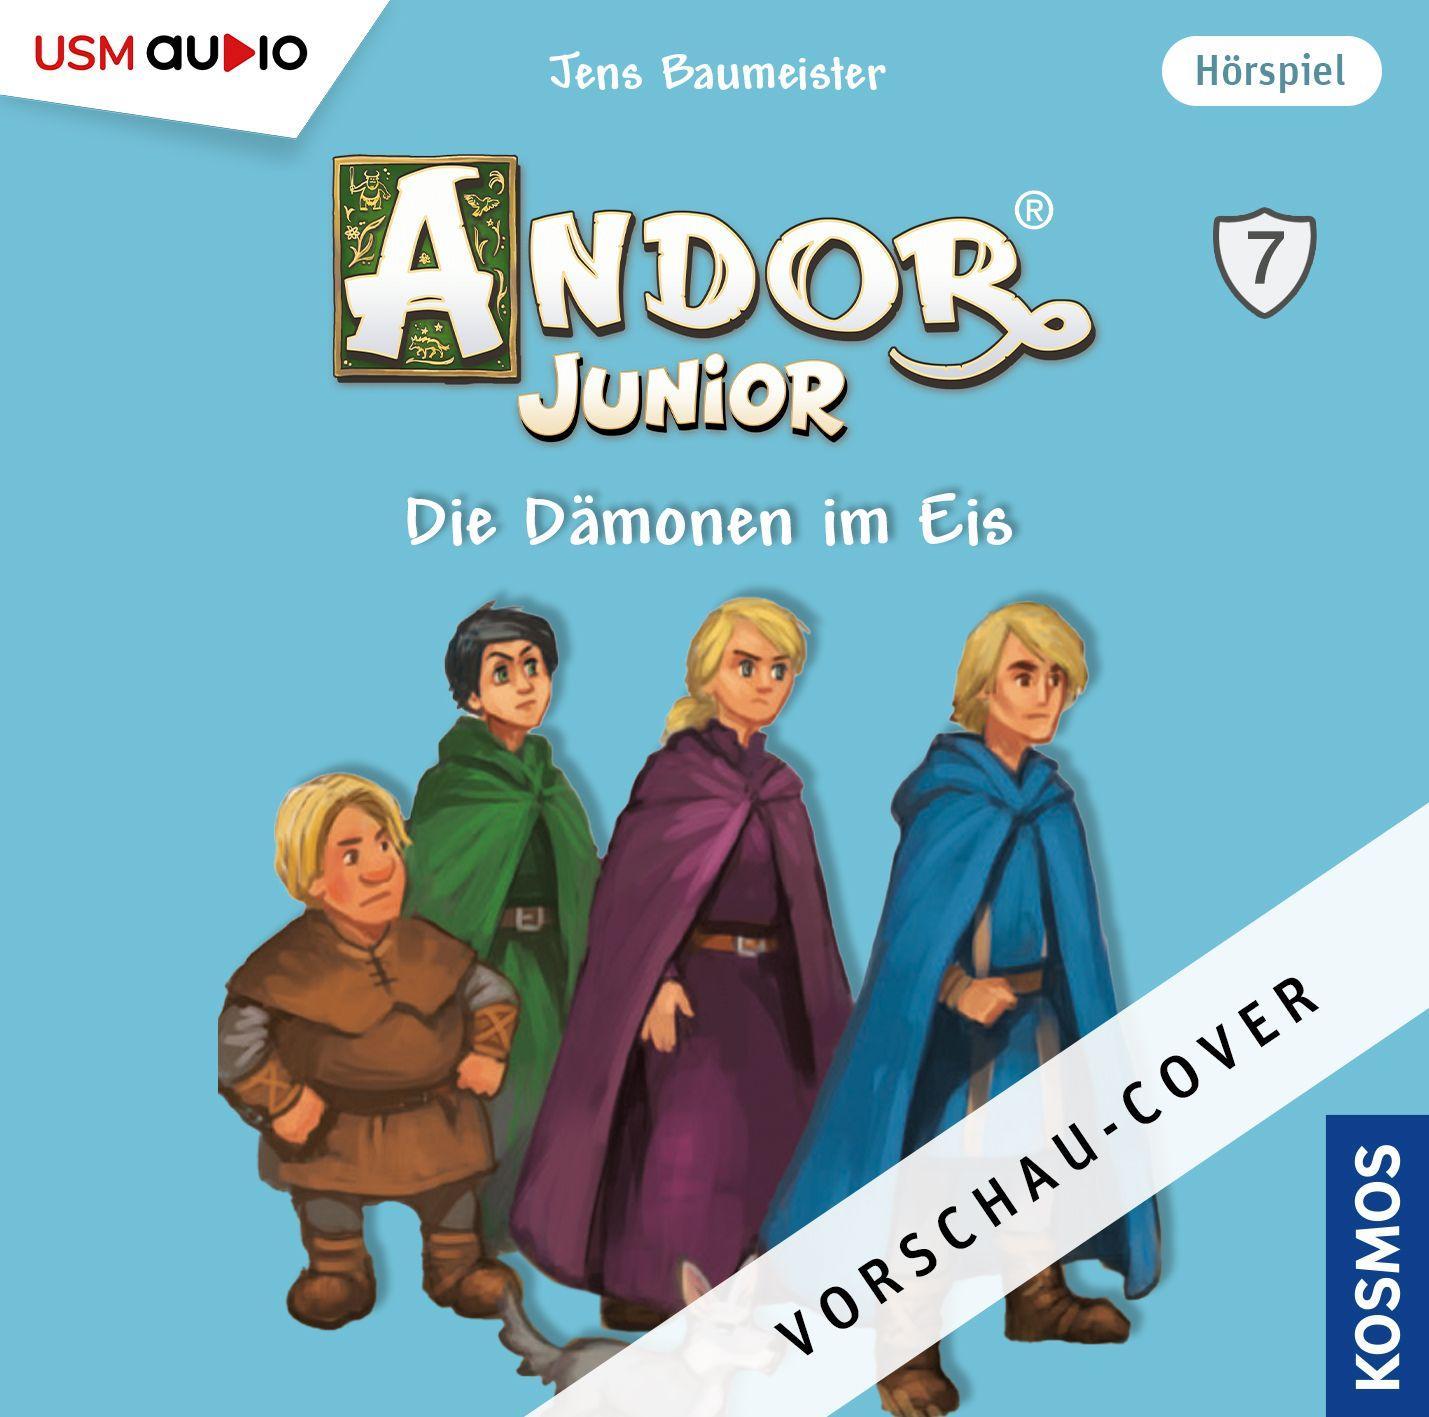 Audio Andor Junior (7) United Soft Media Verlag